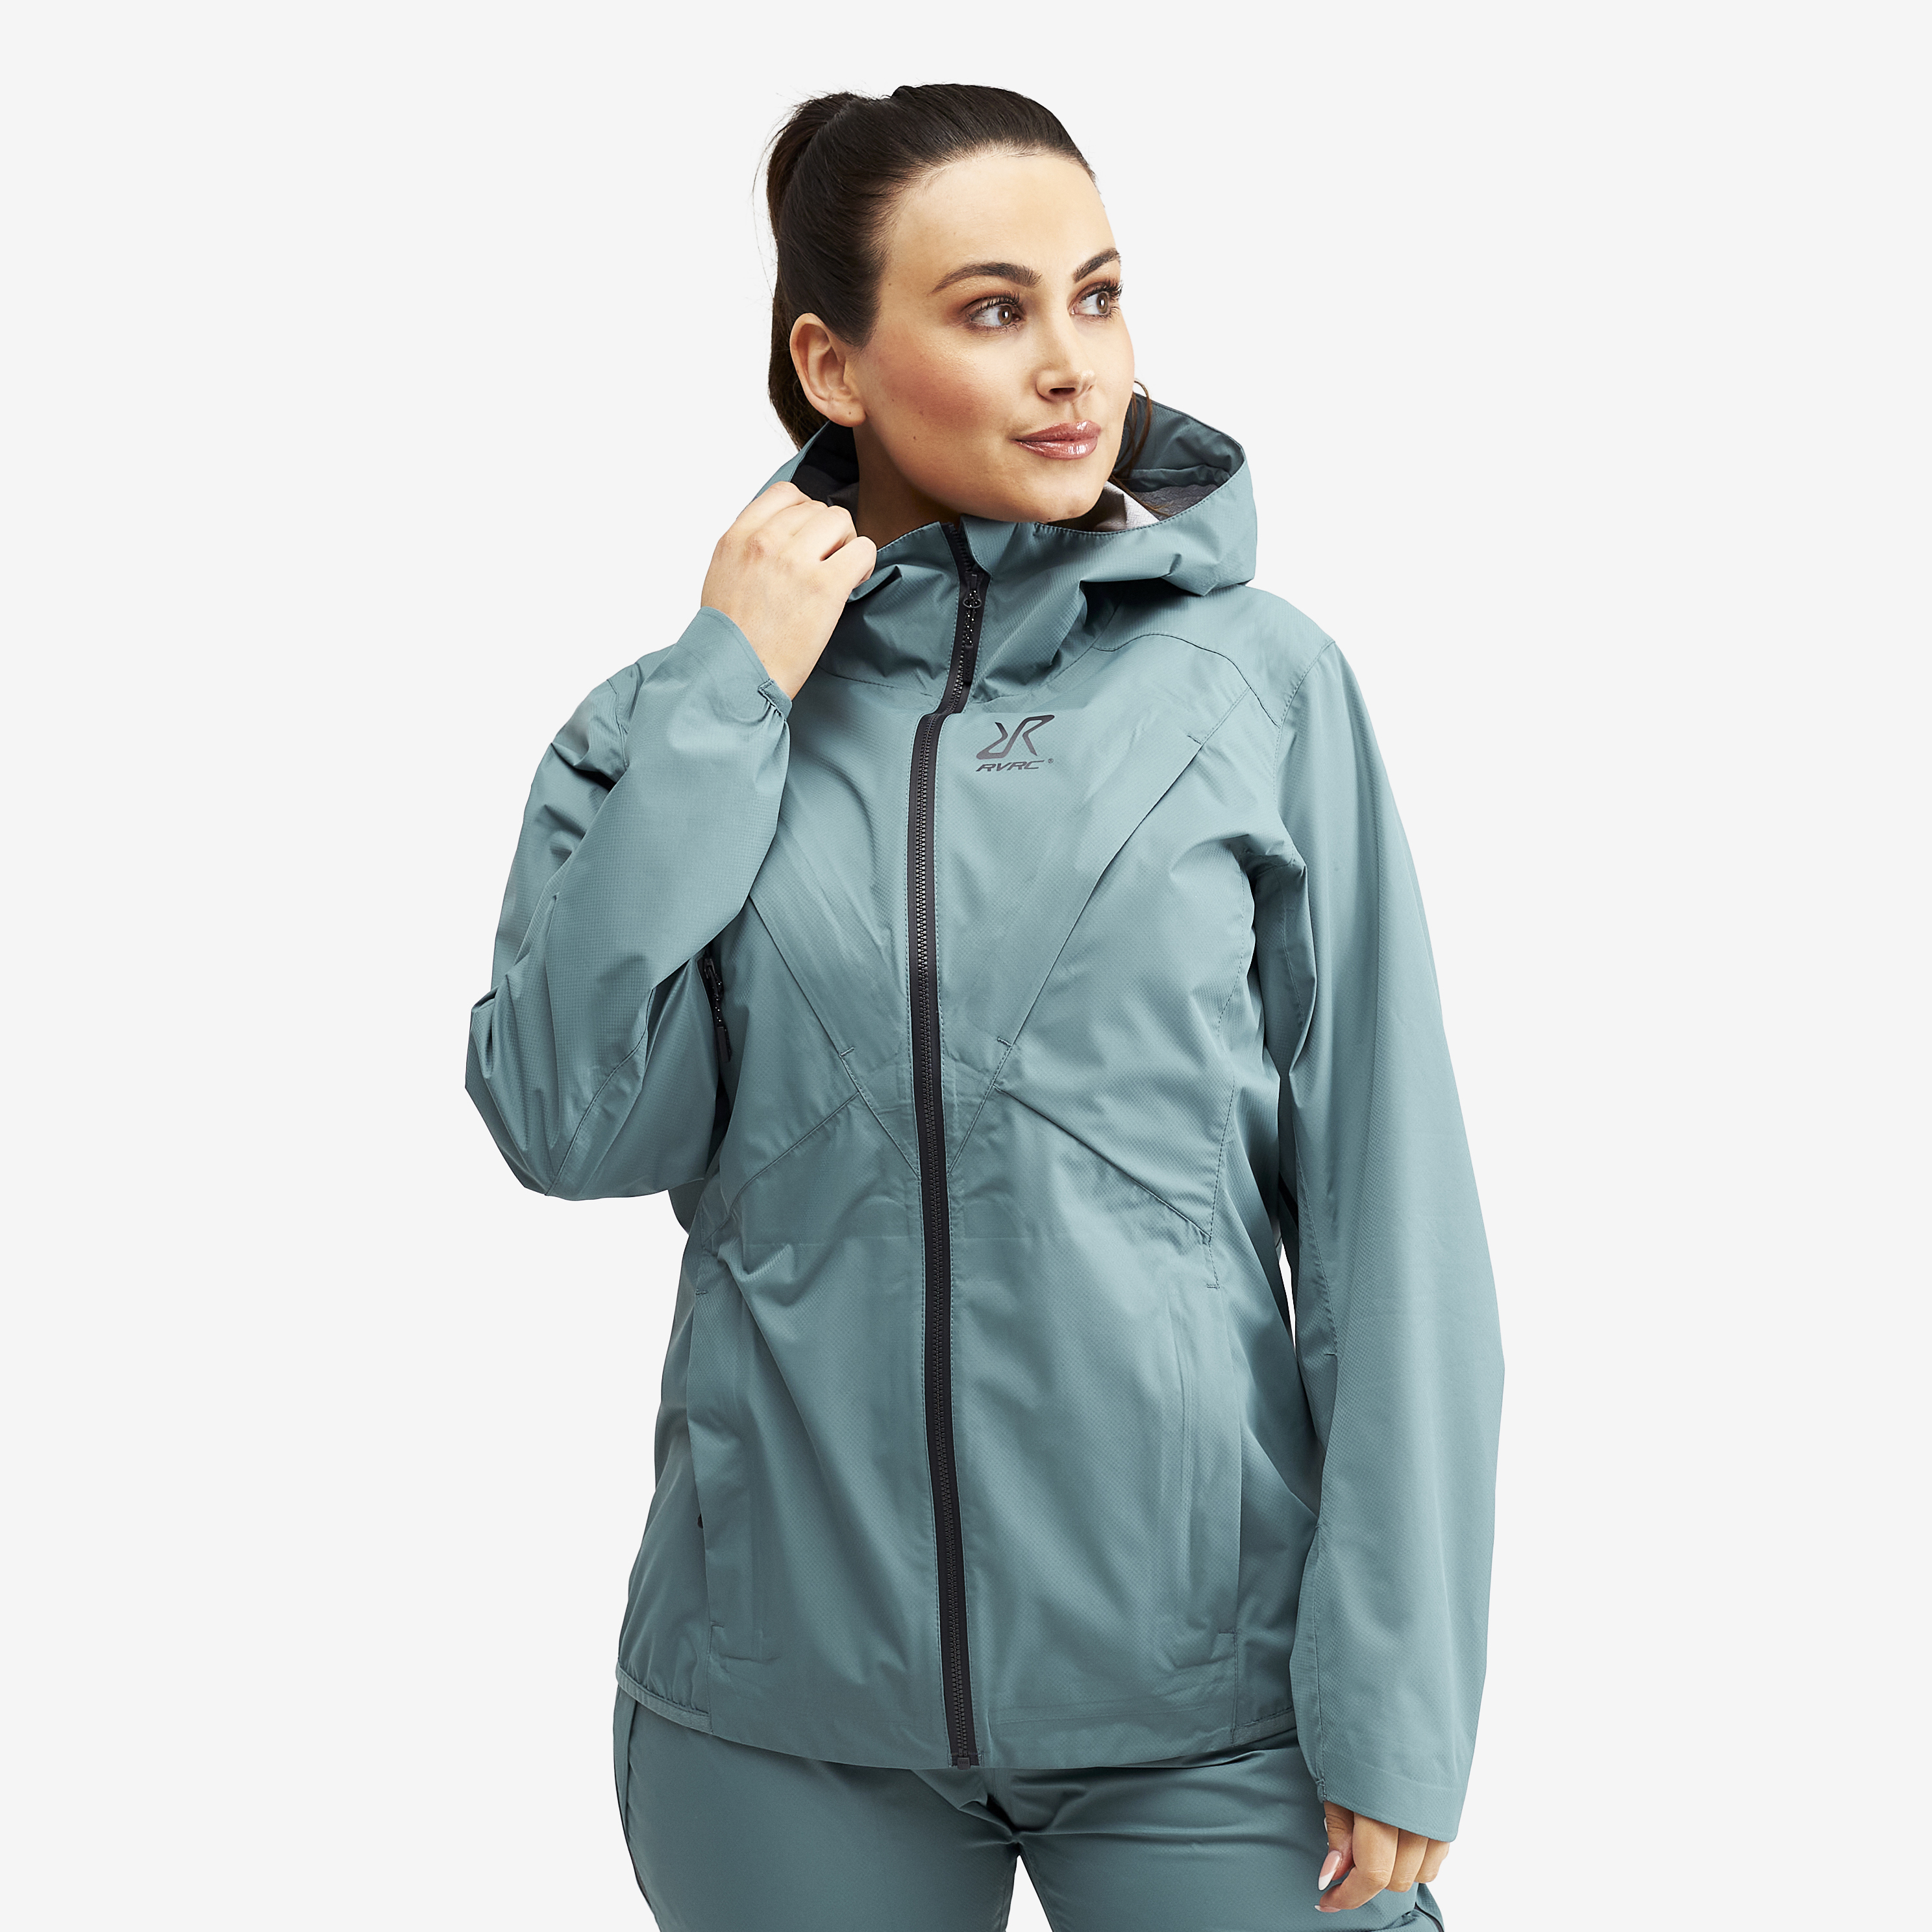 Typhoon waterproof jacket for women in blue